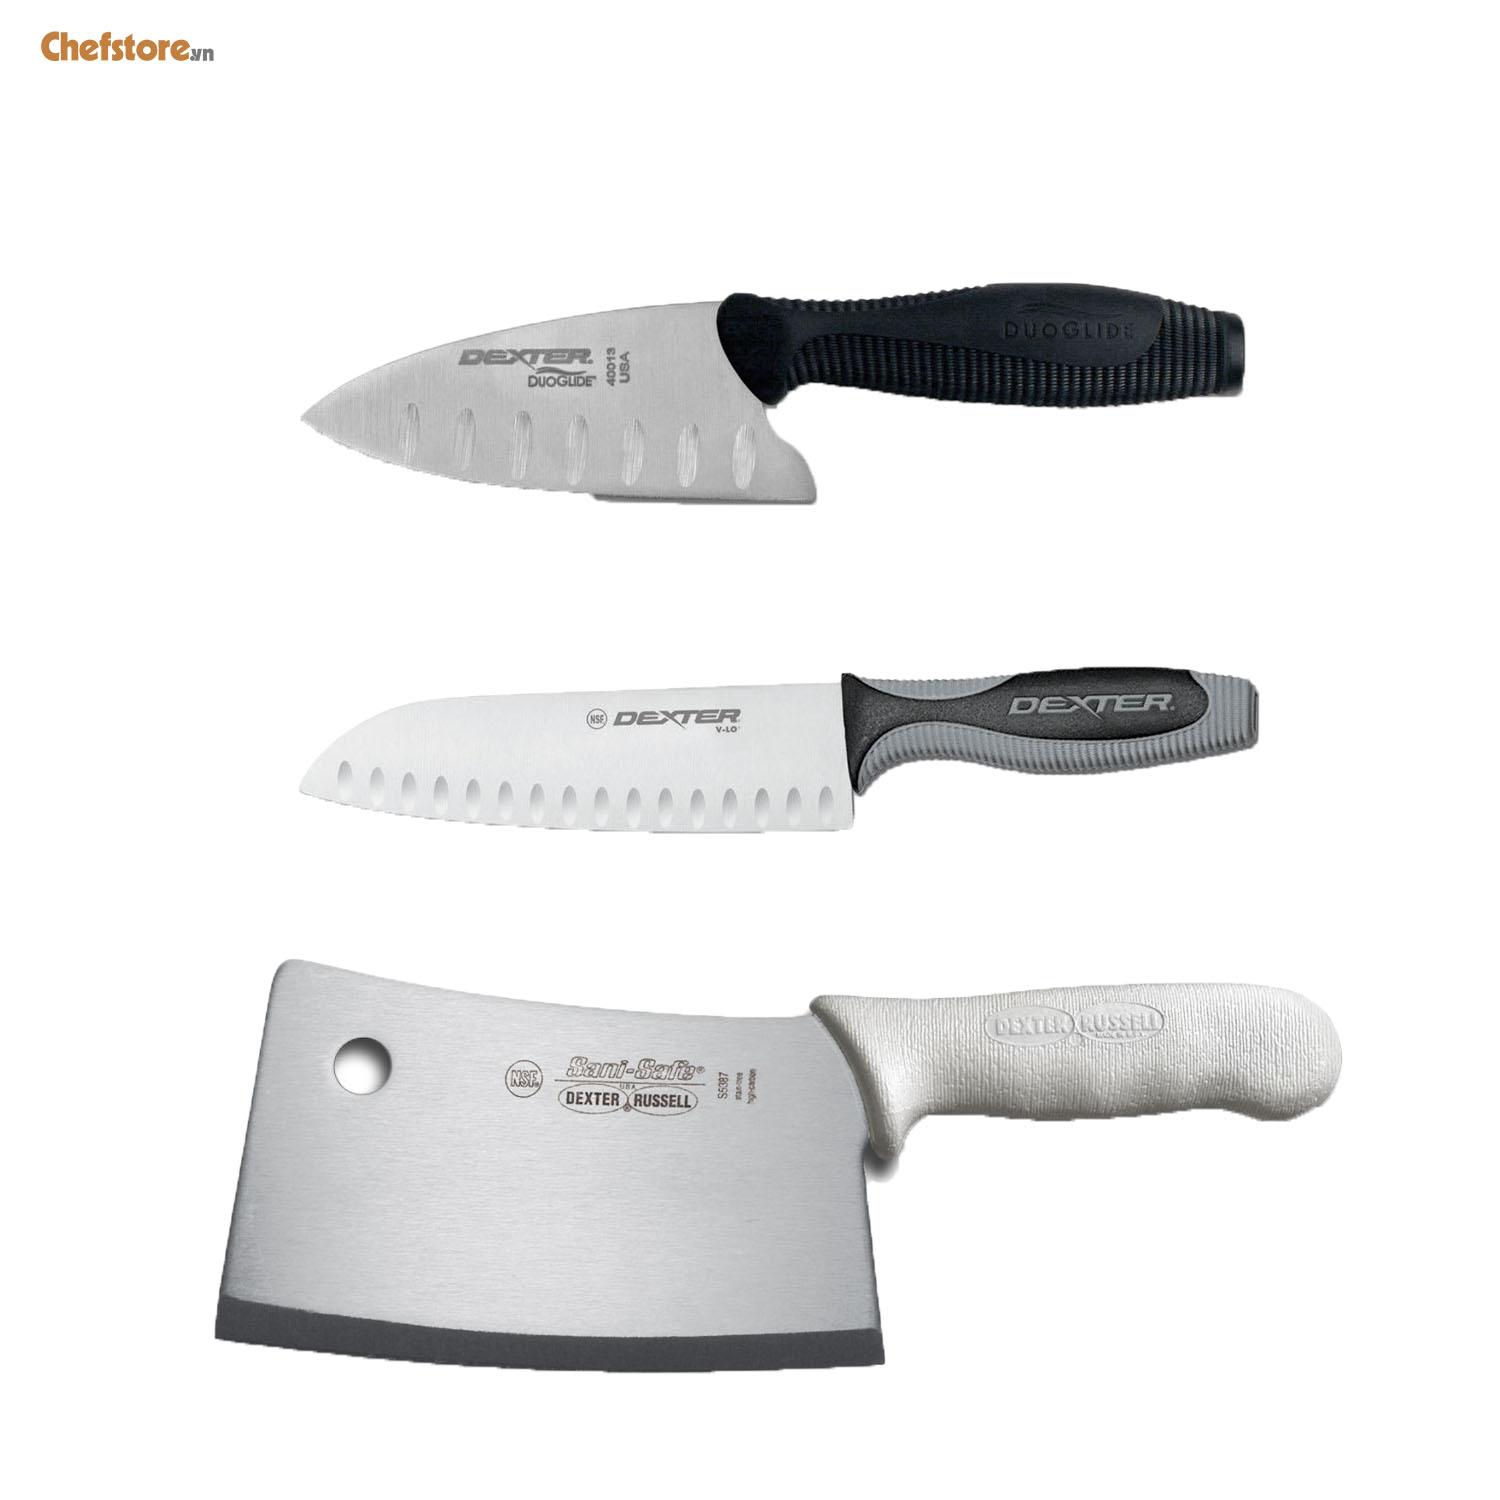 Bộ 3 dao bếp cao cấp Pro Series hãng Dexter - Xuất xứ USA (Trắng)